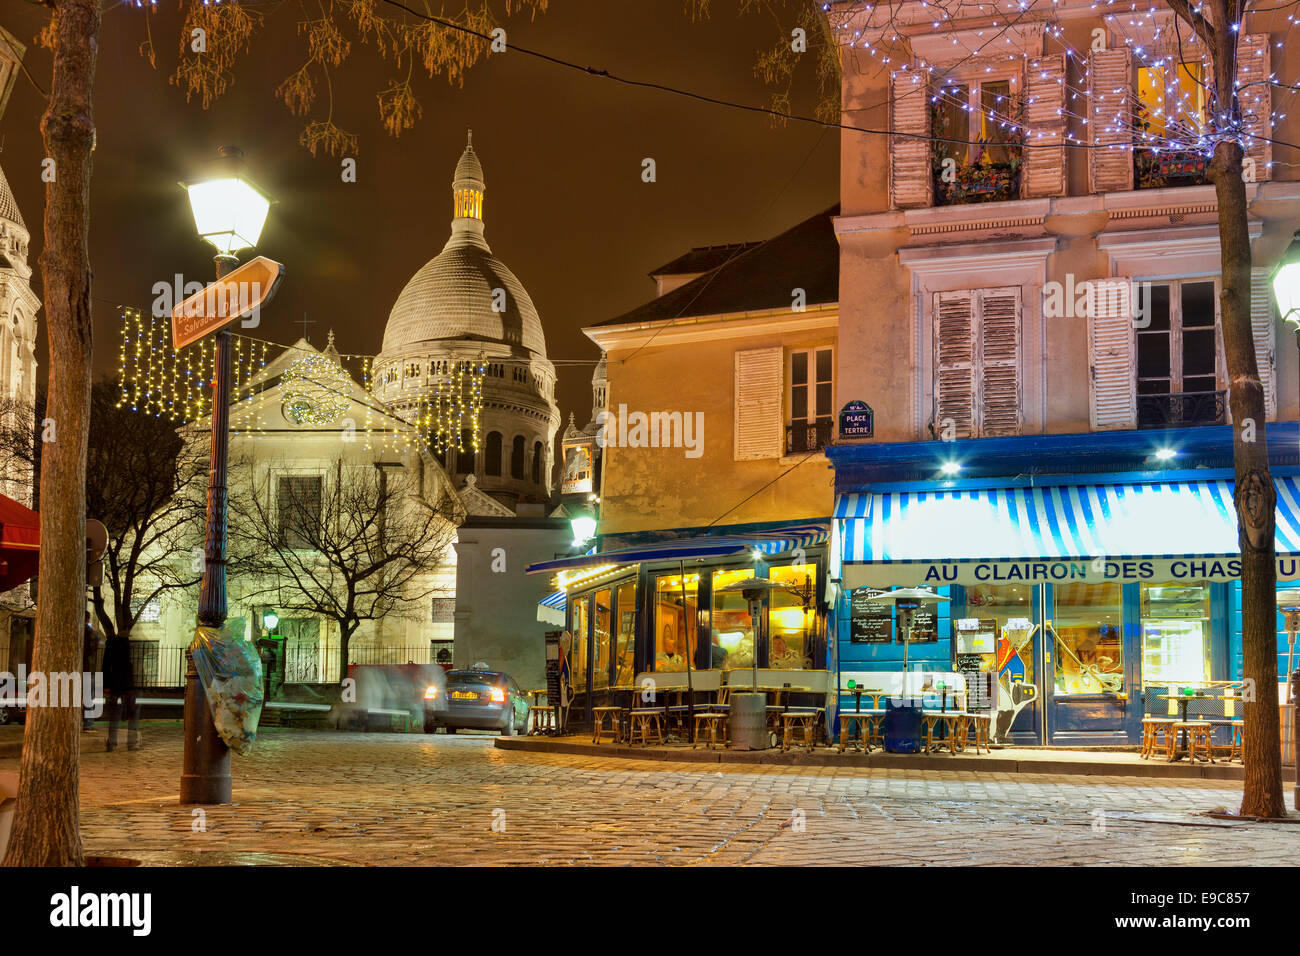 Paris, France - December 22, 2013: Cafe Au Clairon des Chausseurs in the Montparnasse Quarter.Christmas illumination. Stock Photo